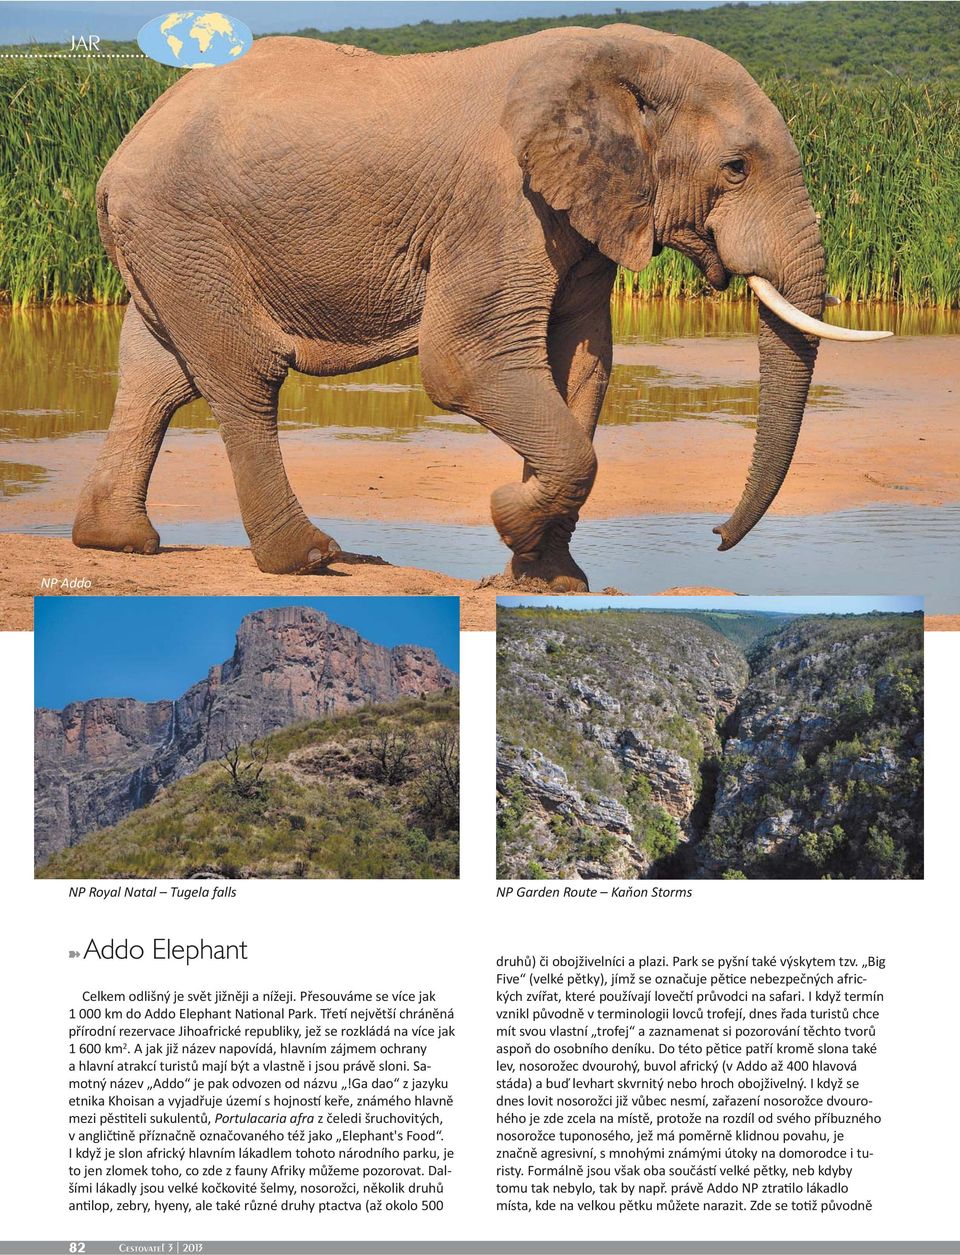 A jak již název napovídá, hlavním zájmem ochrany a hlavní atrakcí turistů mají být a vlastně i jsou právě sloni. Samotný název Addo je pak odvozen od názvu!